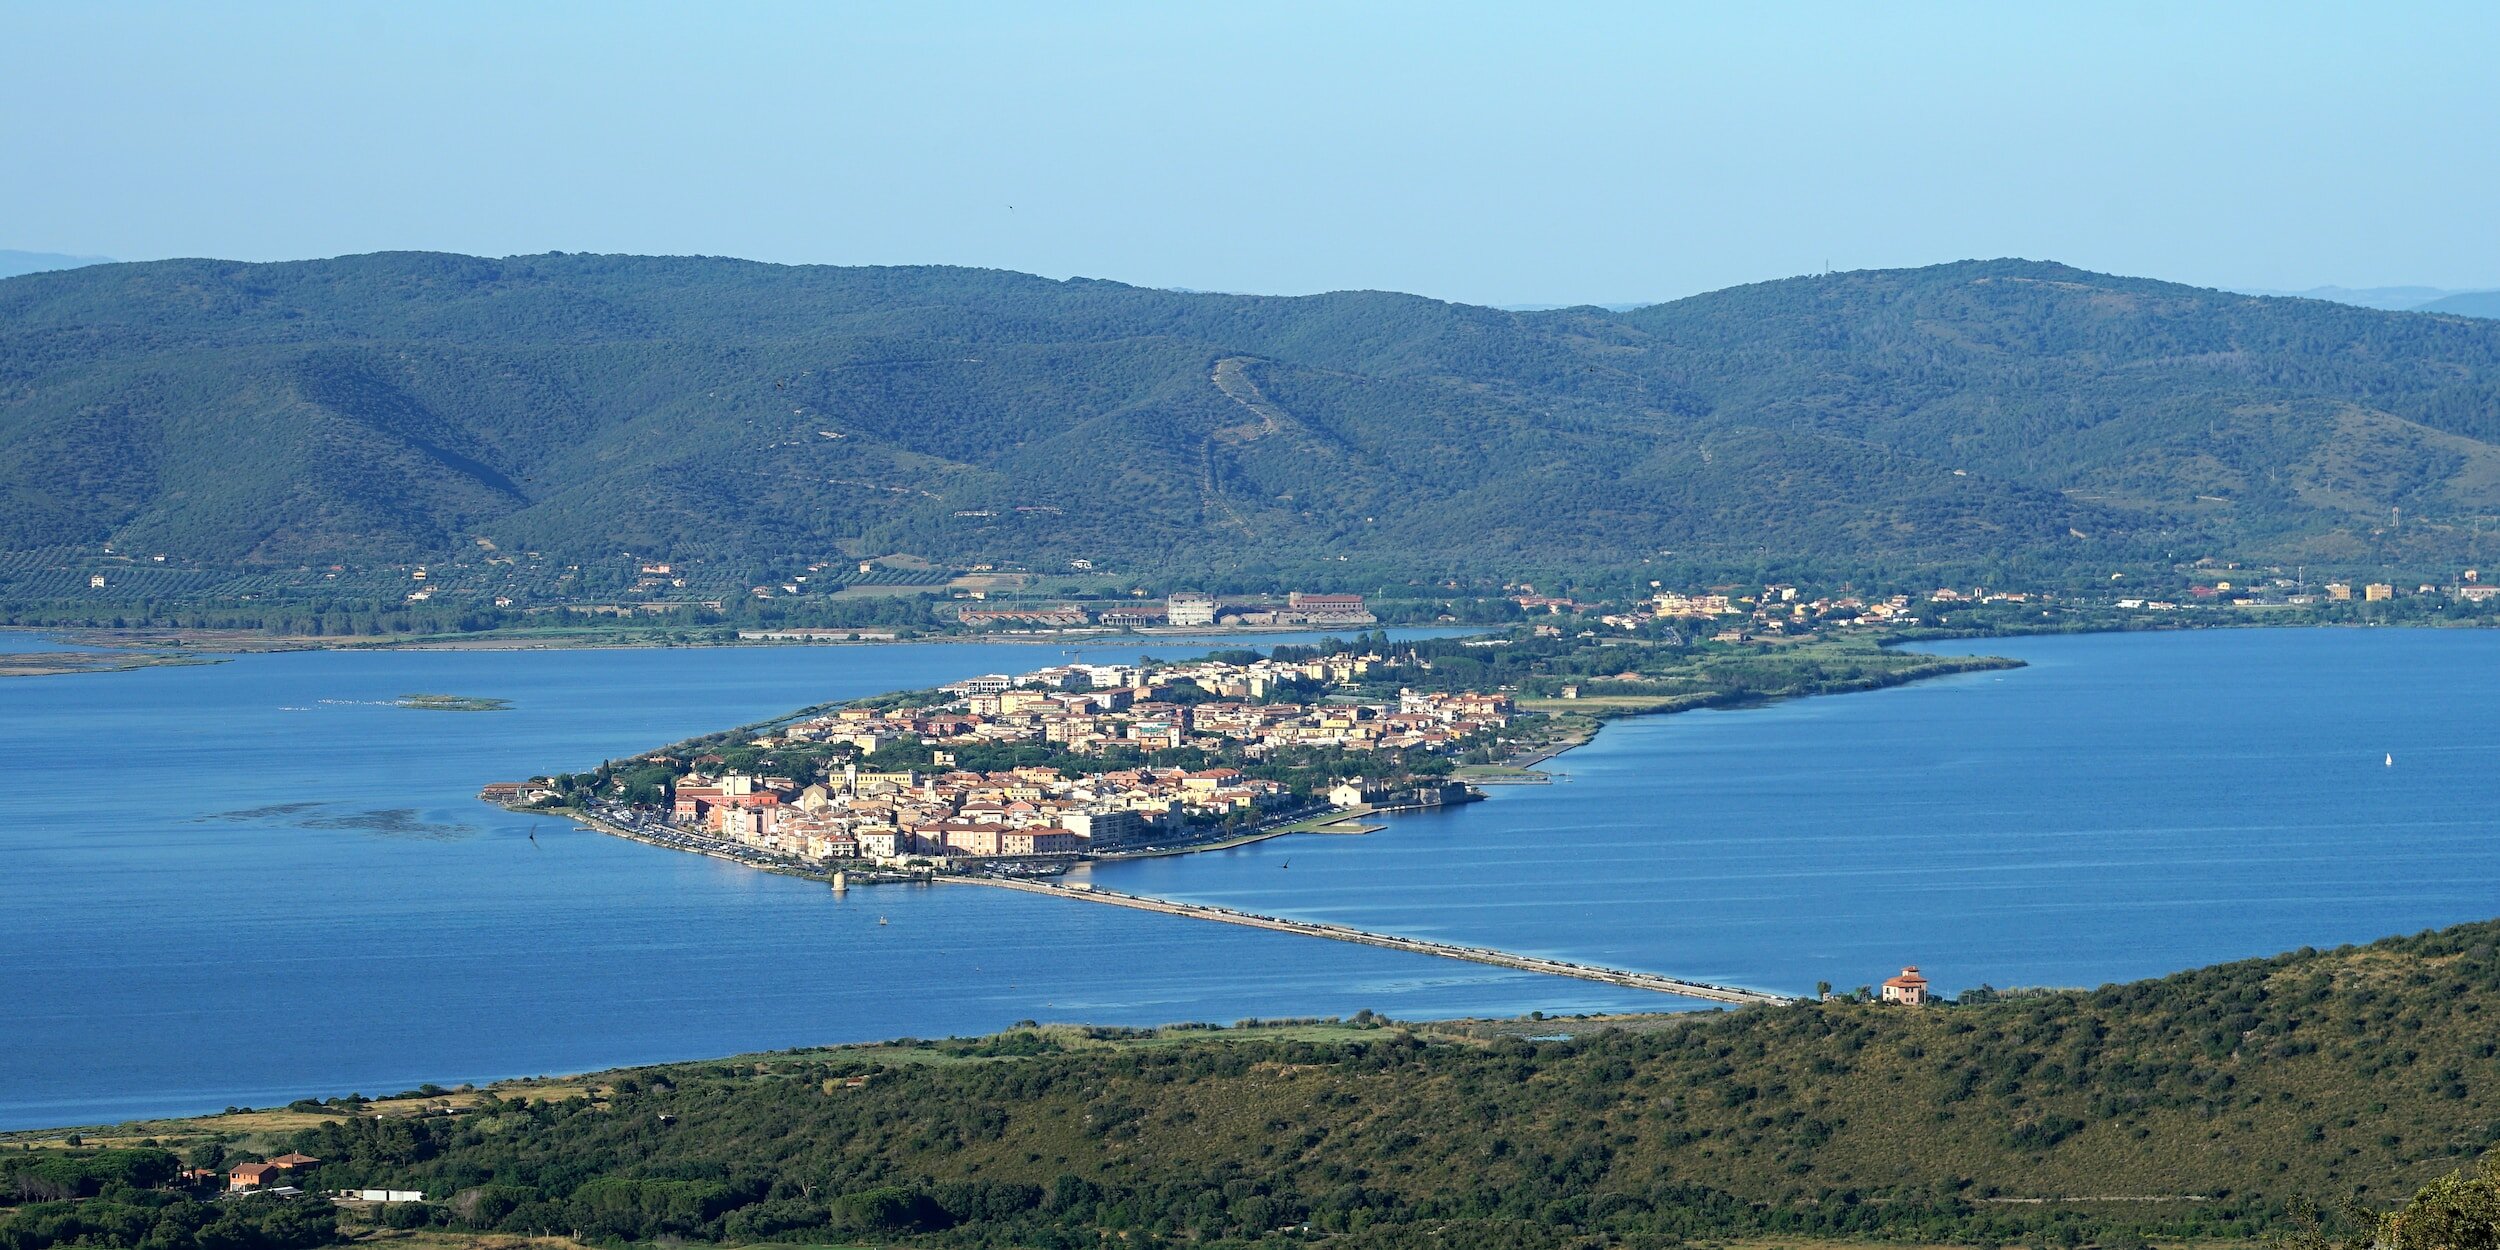 Orbetello, on the Maremma coast